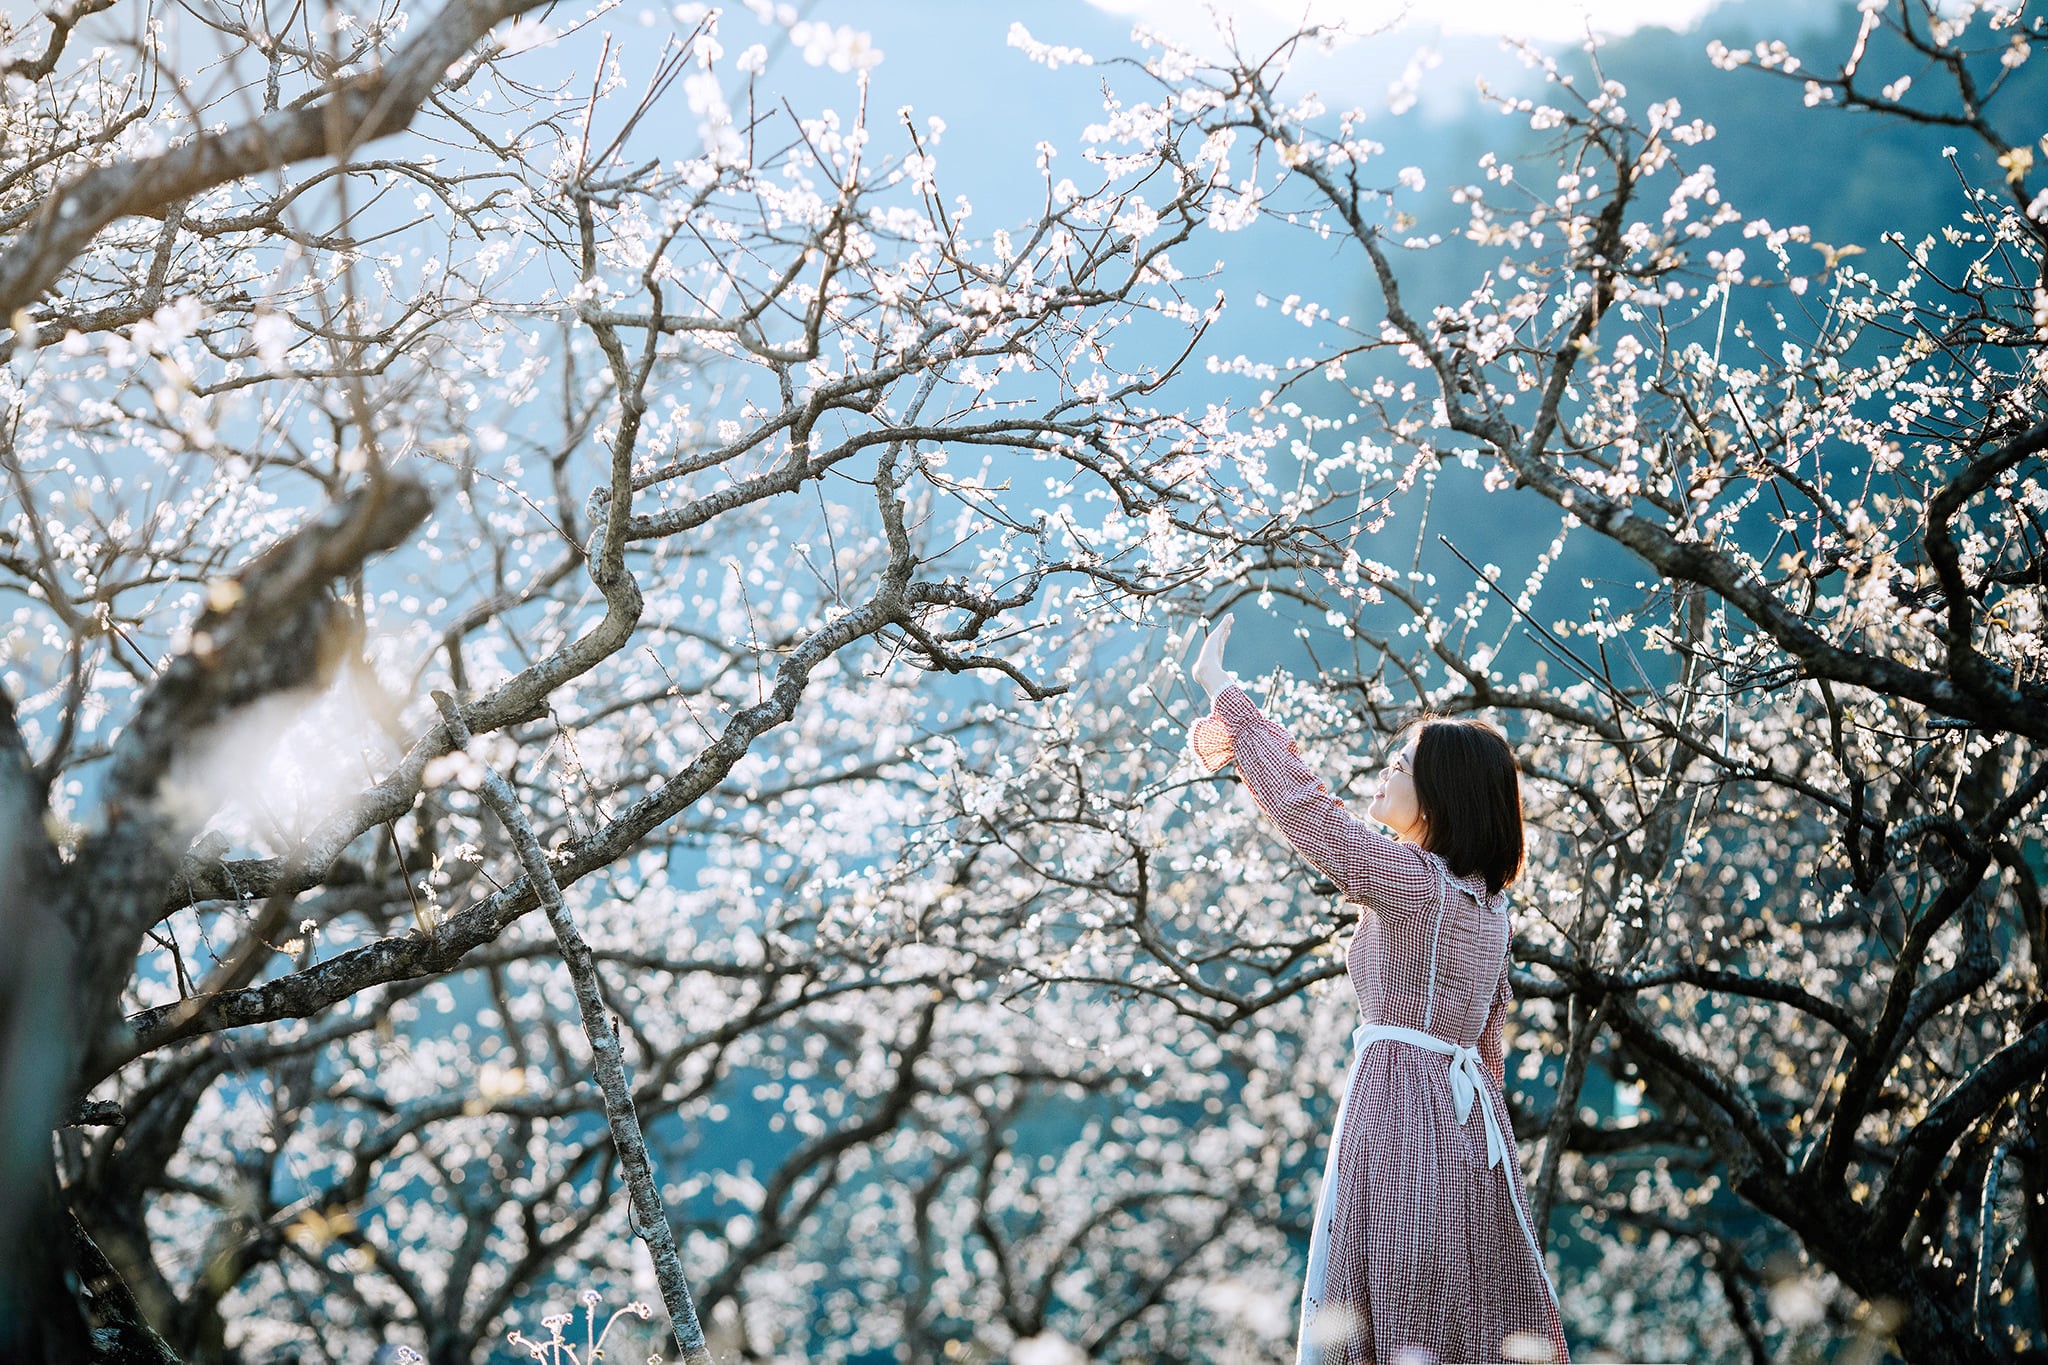  Nhanh nhanh làm chuyến du lịch Mộc Châu 2N1Đ để ngắm hoa mận nở trái mùa, trắng cả một chân trời